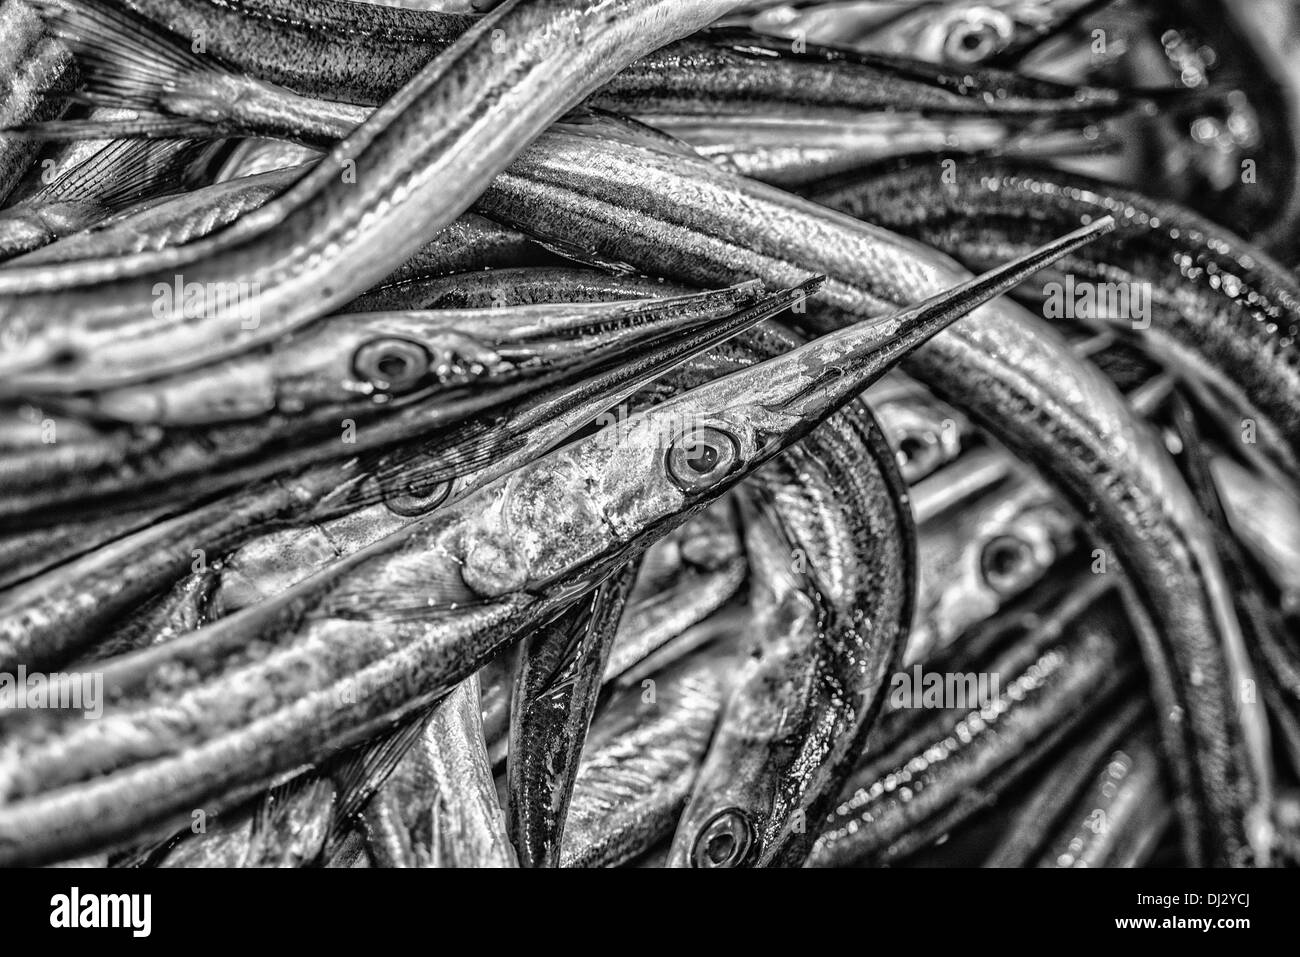 Fischmarkt direkt Angeln Industrie Fisch Sardinen Seafood Markt Salzwasser Fische Stack Meer In A Row Hintergründe und Heimtiere Stockfoto